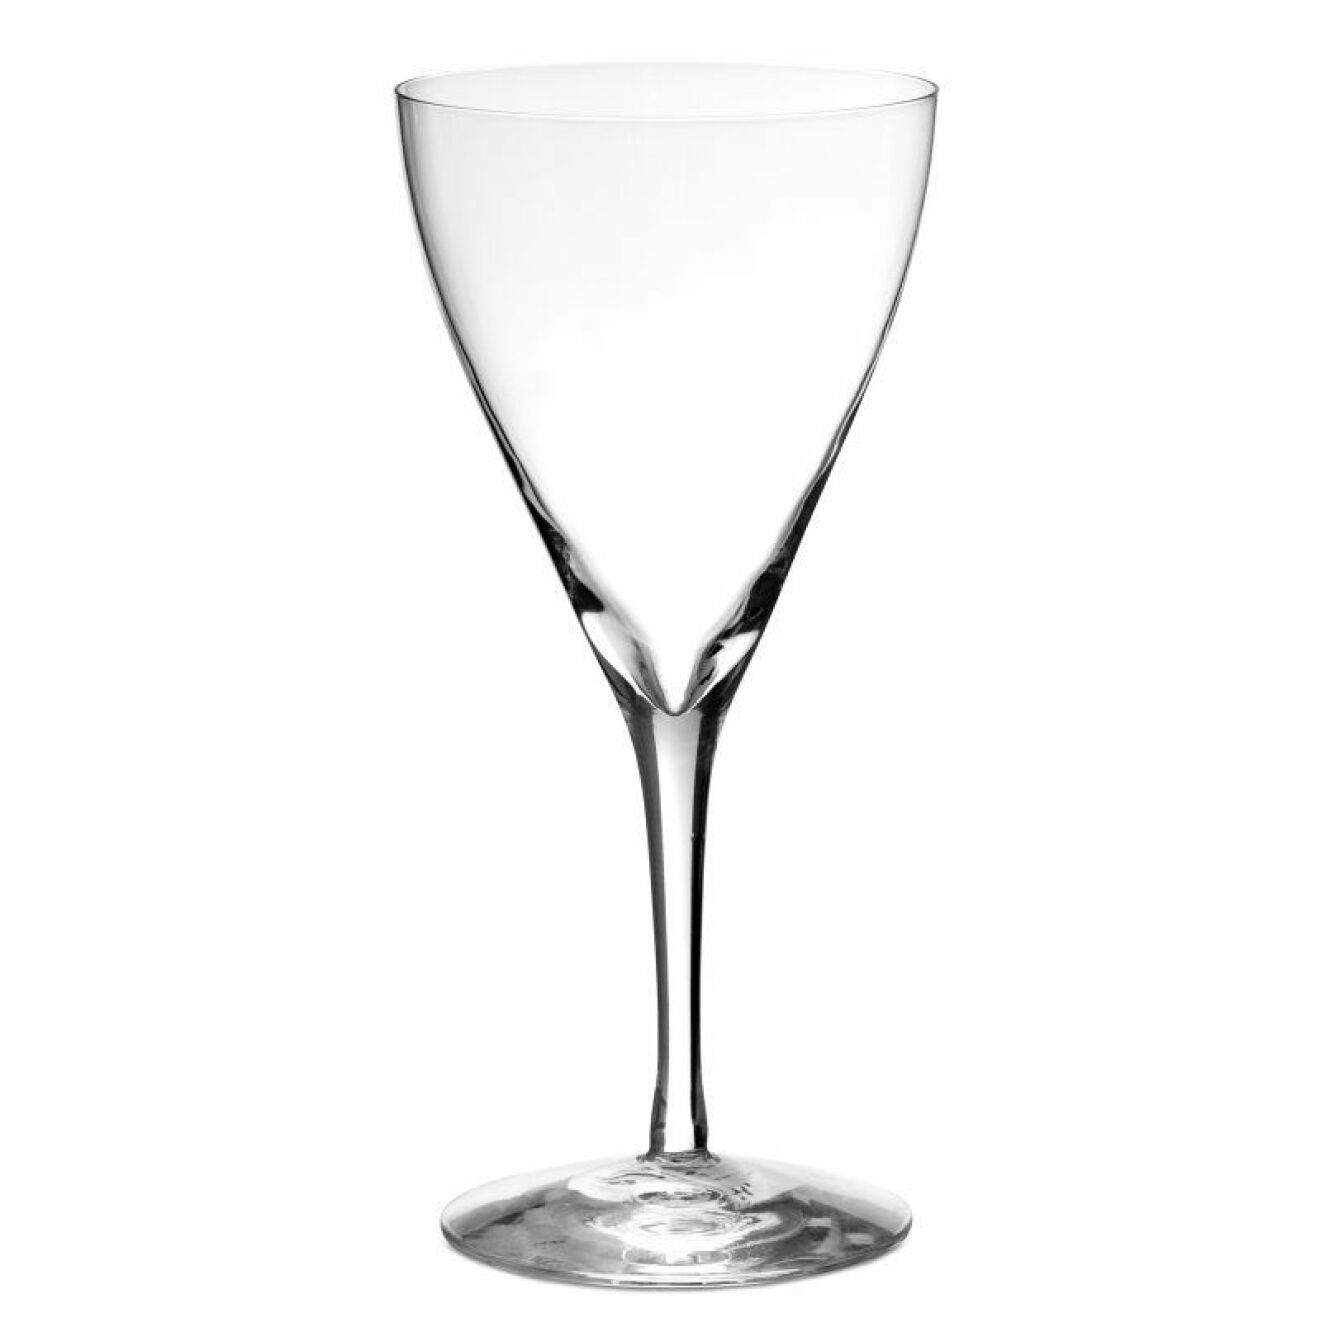 Champagneglas Crystal flora av Ingegerd Raman, Skrufs glasbruk.